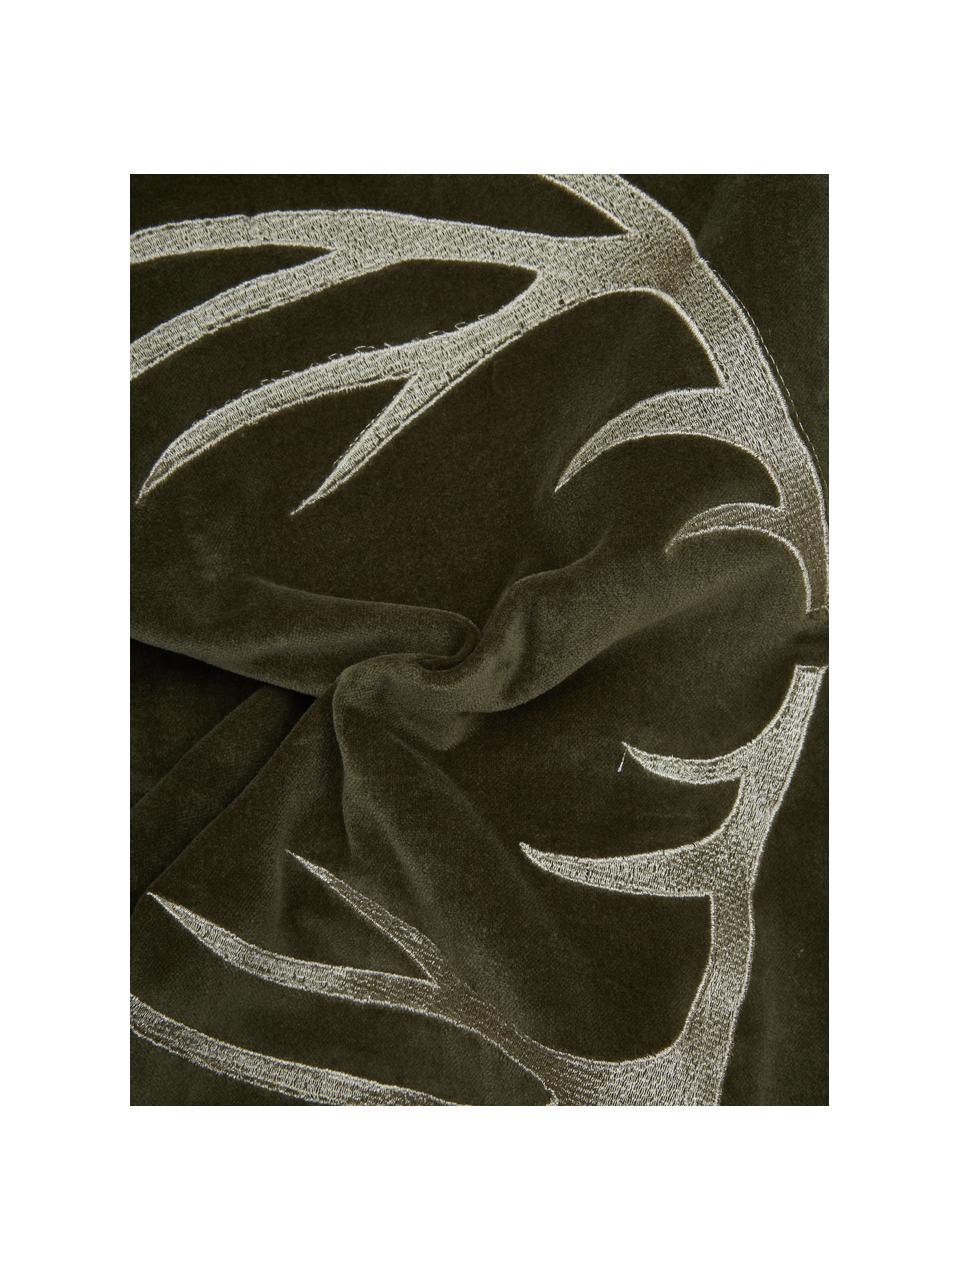 Samt-Kissen Embroidered Antler mit Hirsch-Motiv in Olivegrün, Bezug: 100% Baumwollsamt, Olivegrün, Weiß, B 30 x L 50 cm